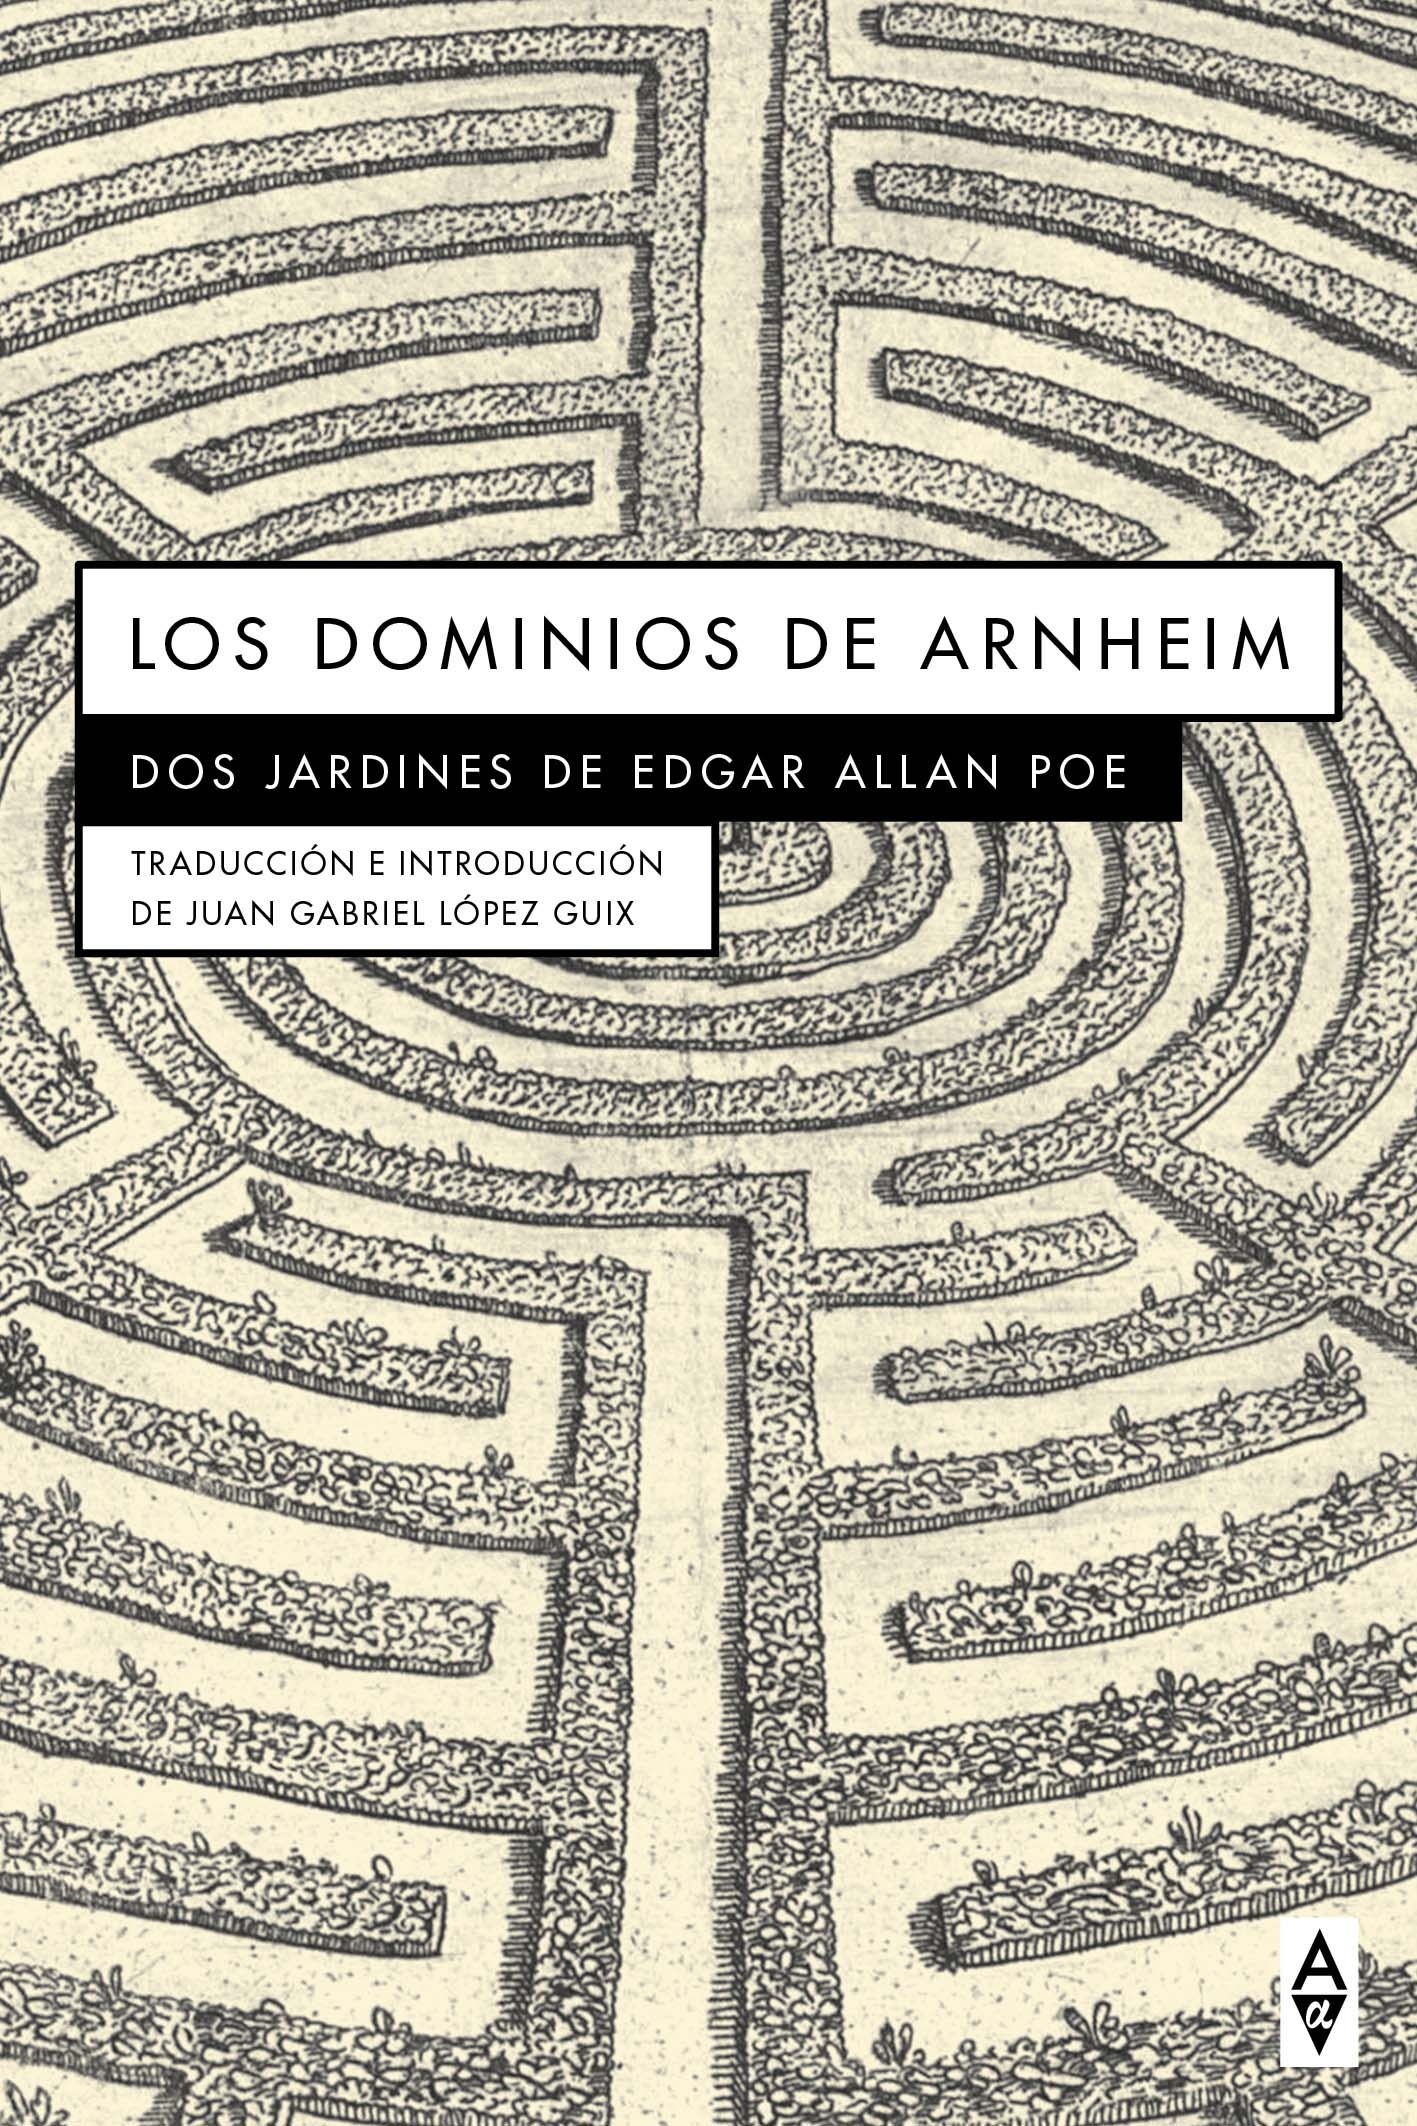 Dominios de Arnheim, Los "Dos jardines de Edgar Allan Poe"